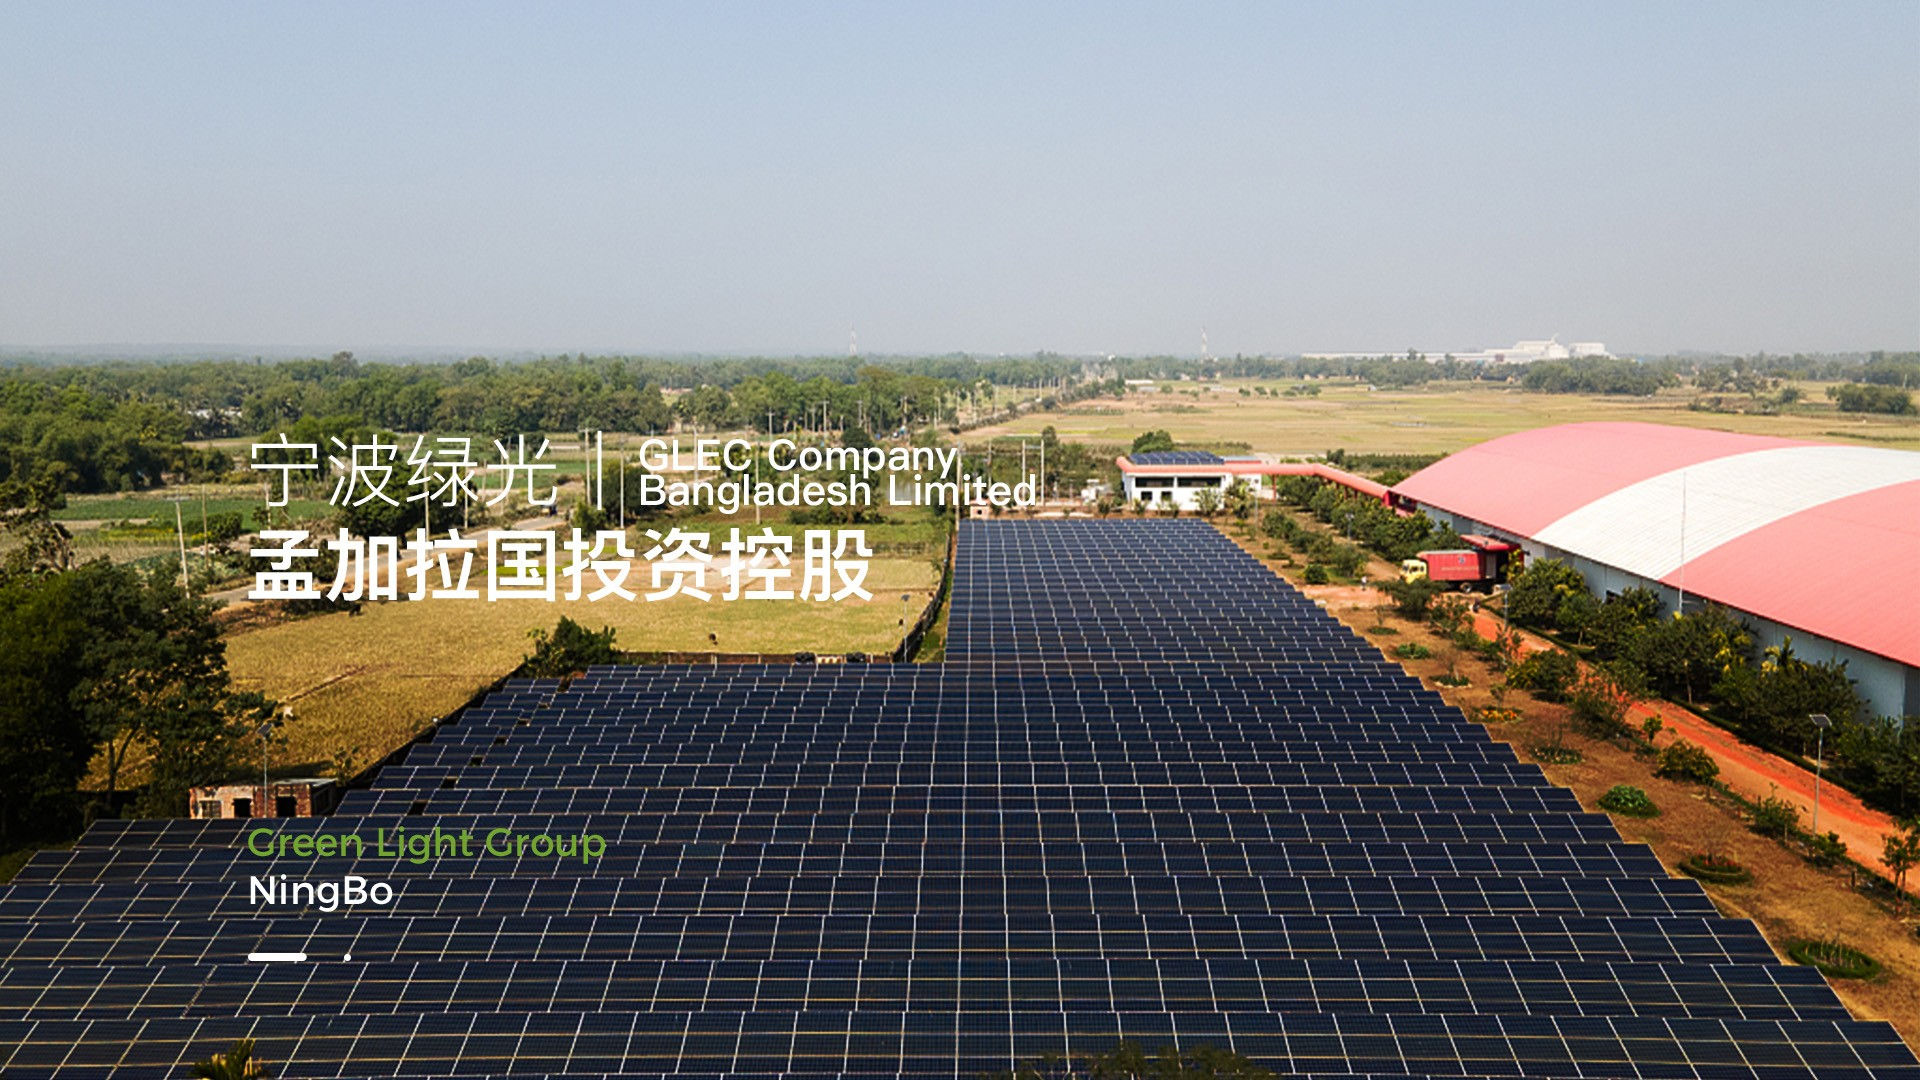 宁波绿光能源集团有限公司